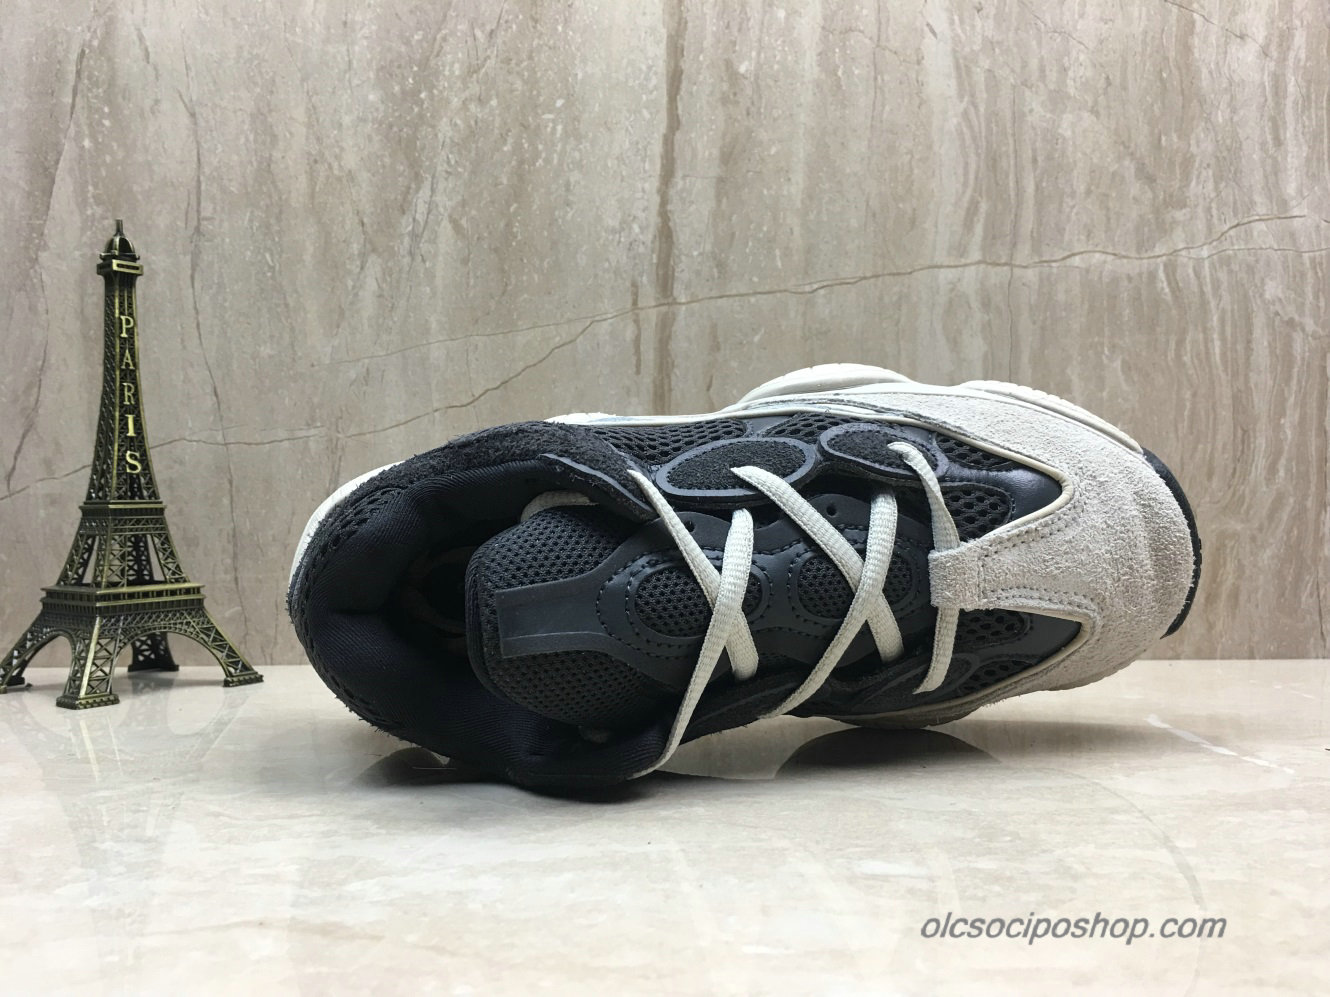 Adidas Yeezy Desert Rat 500 Blush Hamu Szürke/Fekete Cipők (DB3968) - Kattintásra bezárul